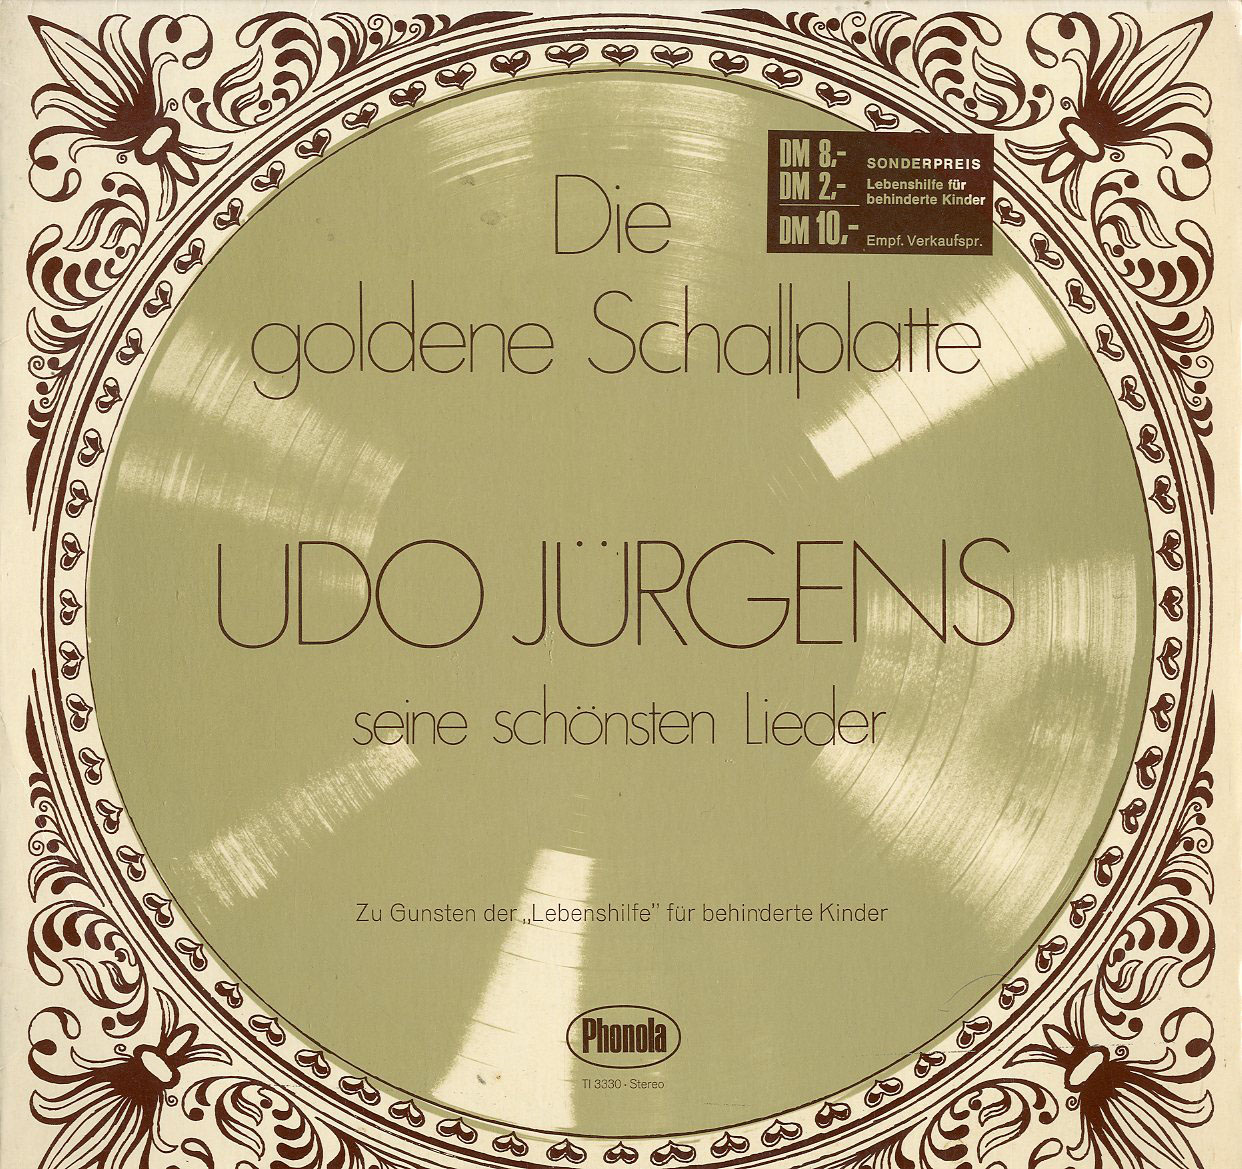 Albumcover Udo Jürgens - Die goldene Schallplatte - Seine schönsten Lieder - Zu Gunsten der Lebenshilfe für behinderte Kinder